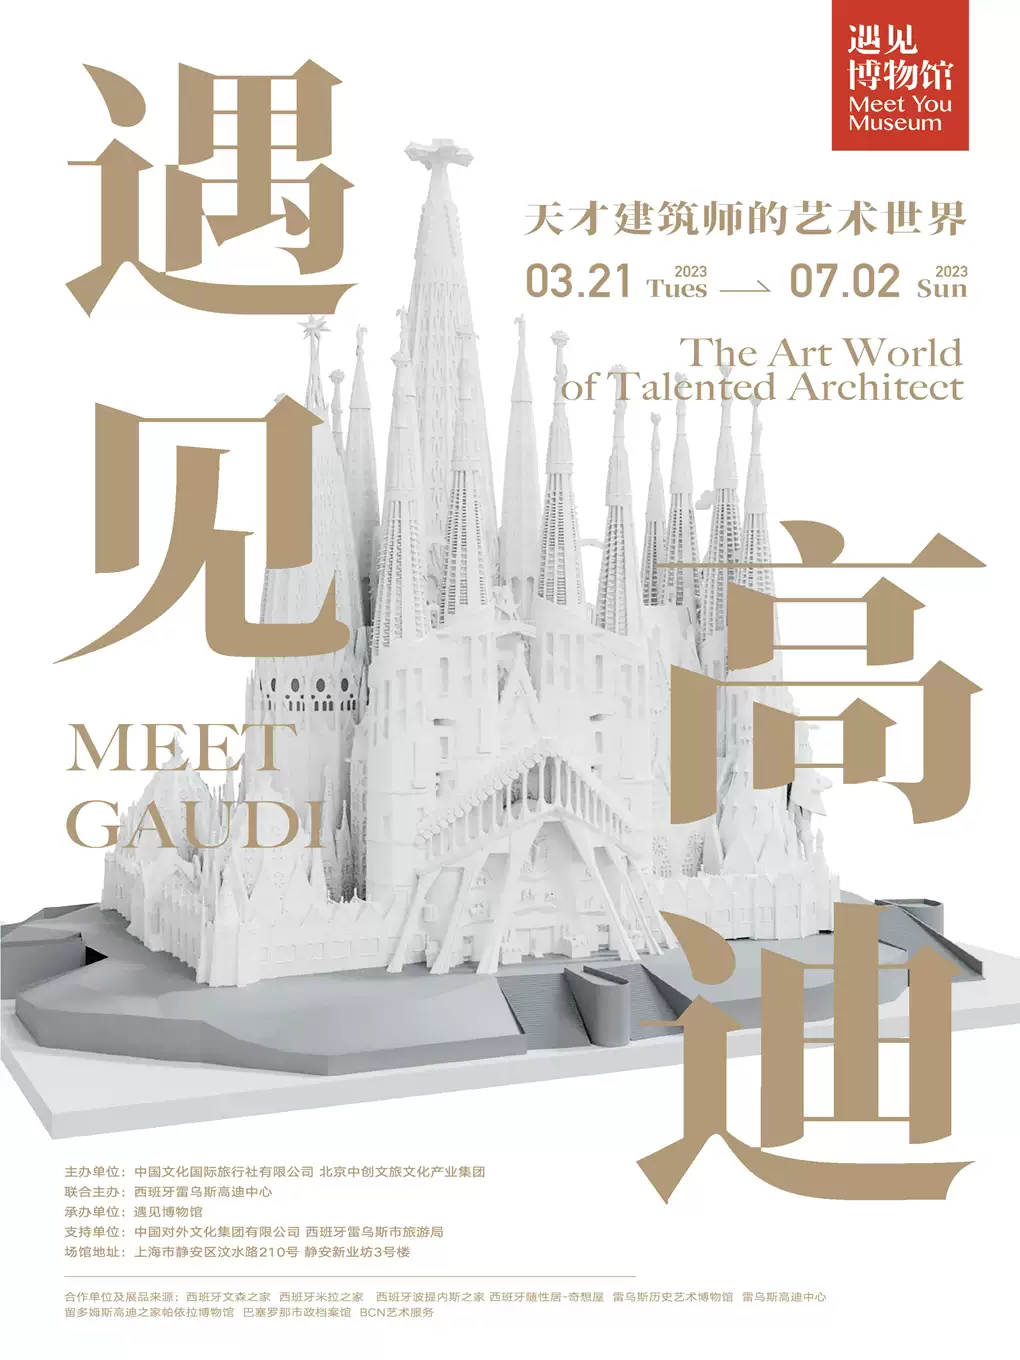 上海遇见高迪天才建筑师的艺术世界